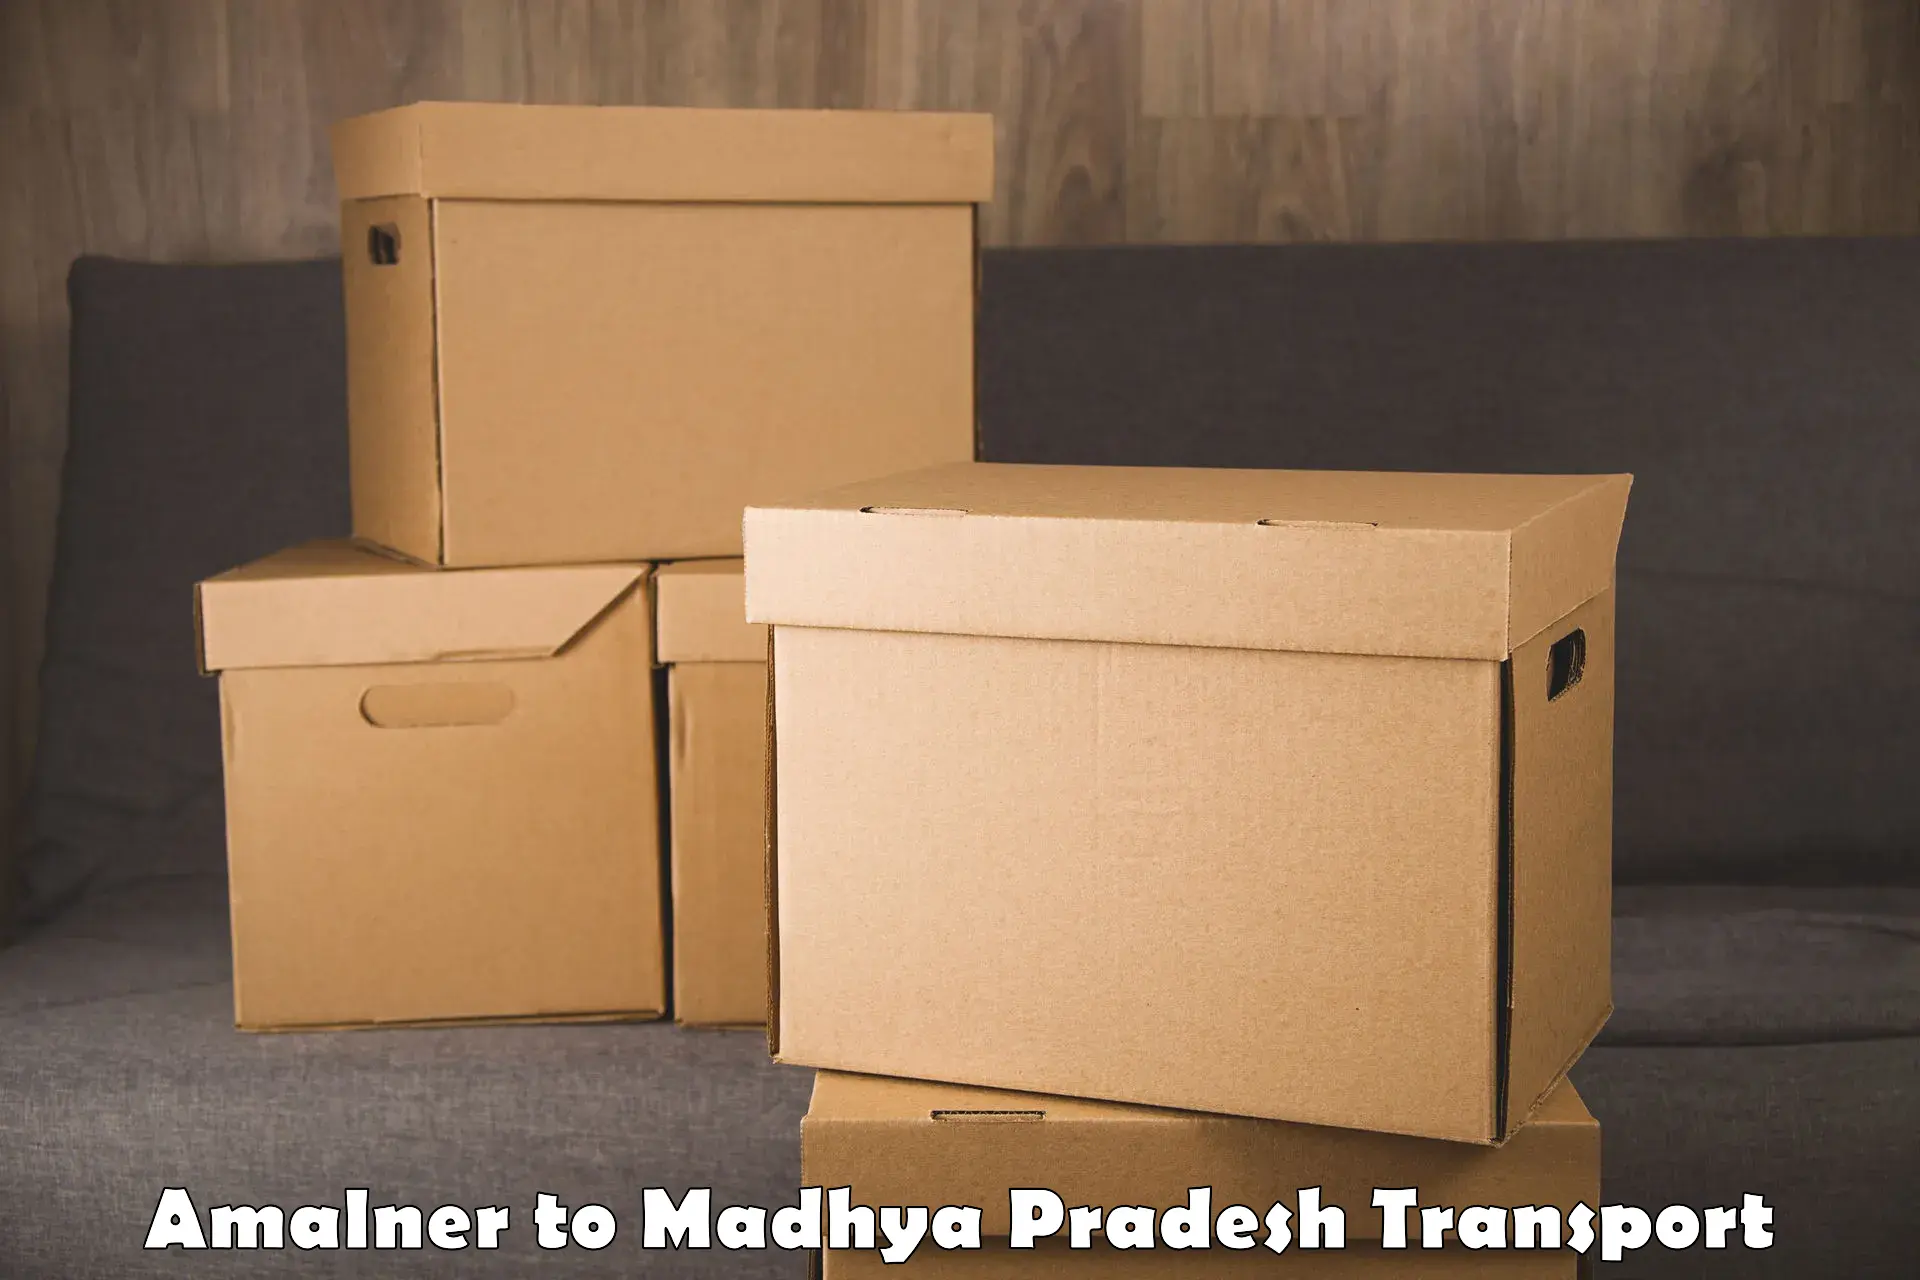 Furniture transport service Amalner to Vidisha